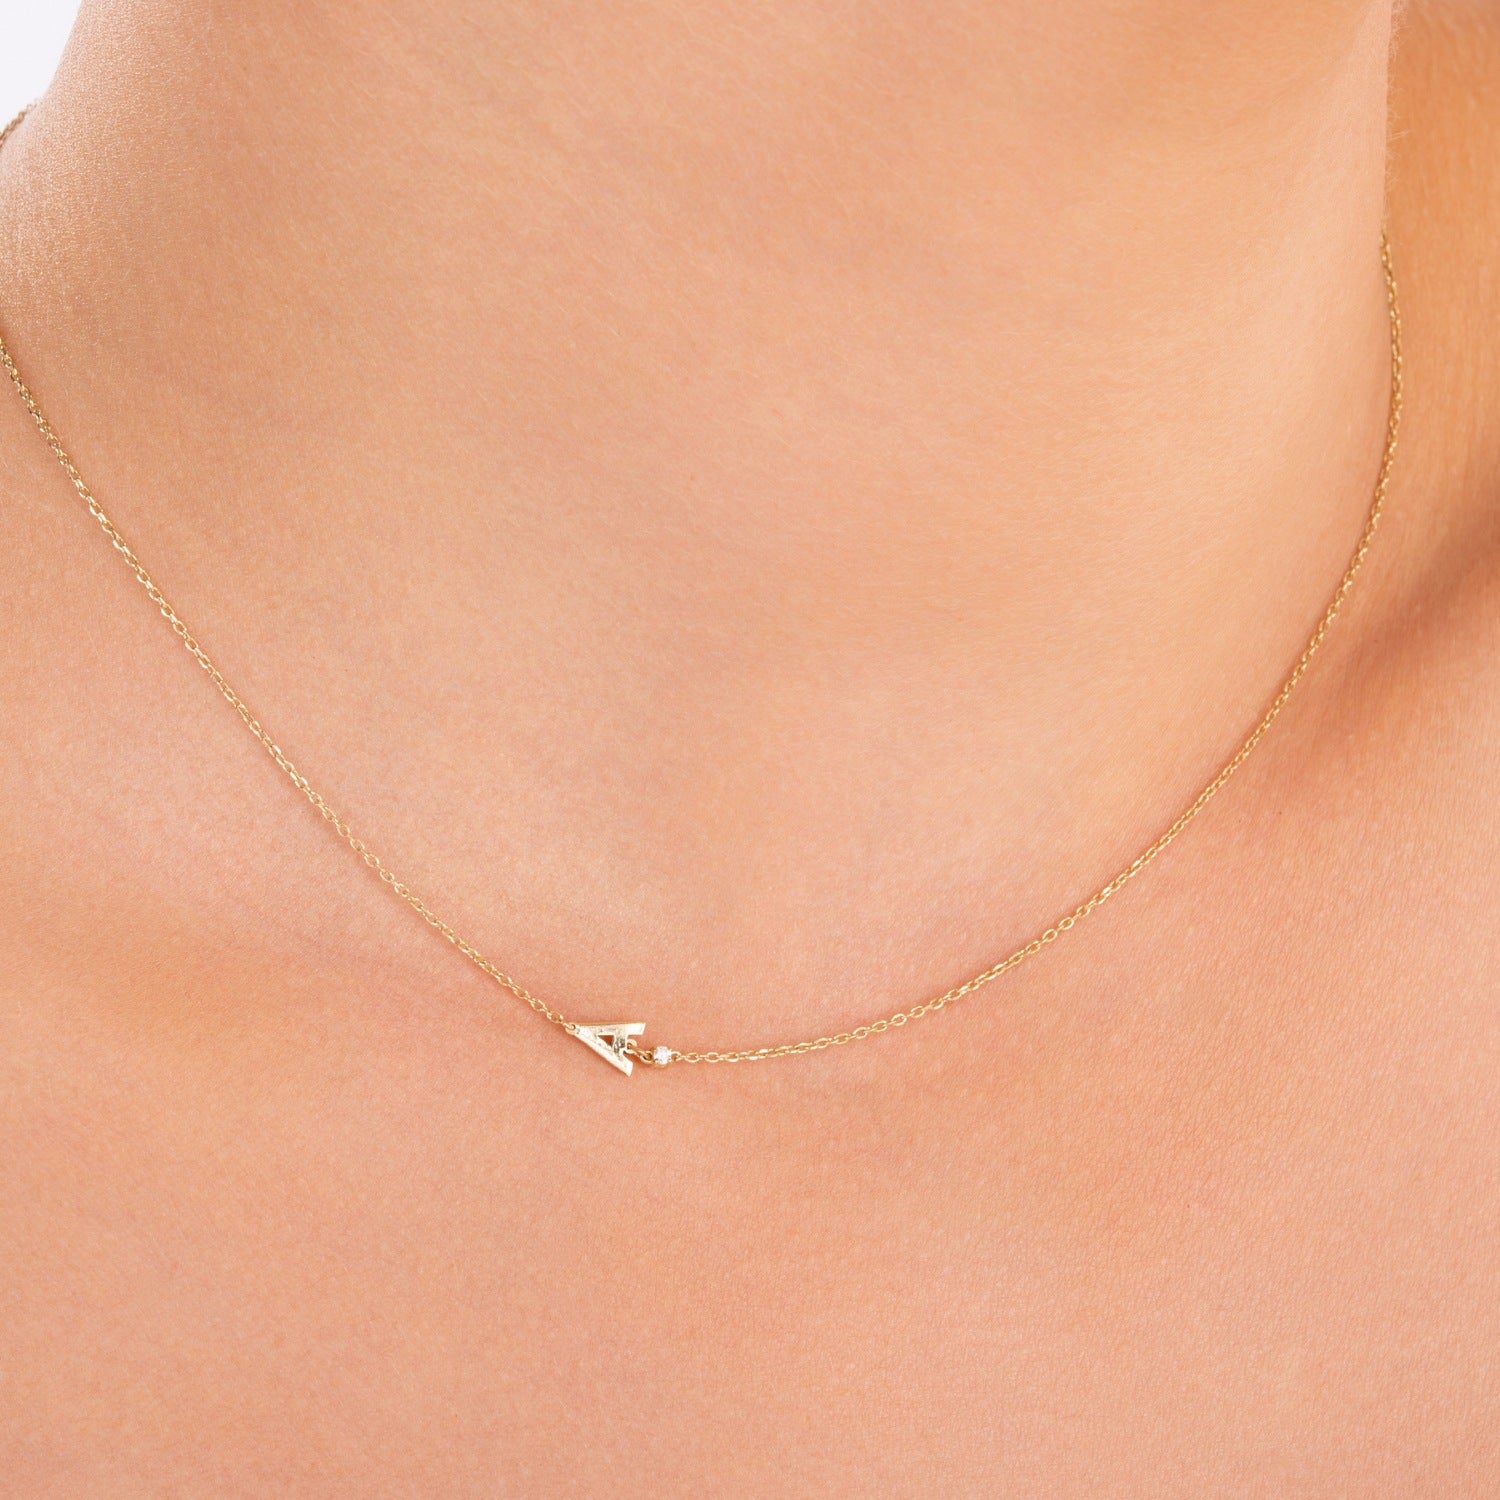 Sideways Initial Necklace with Diamond